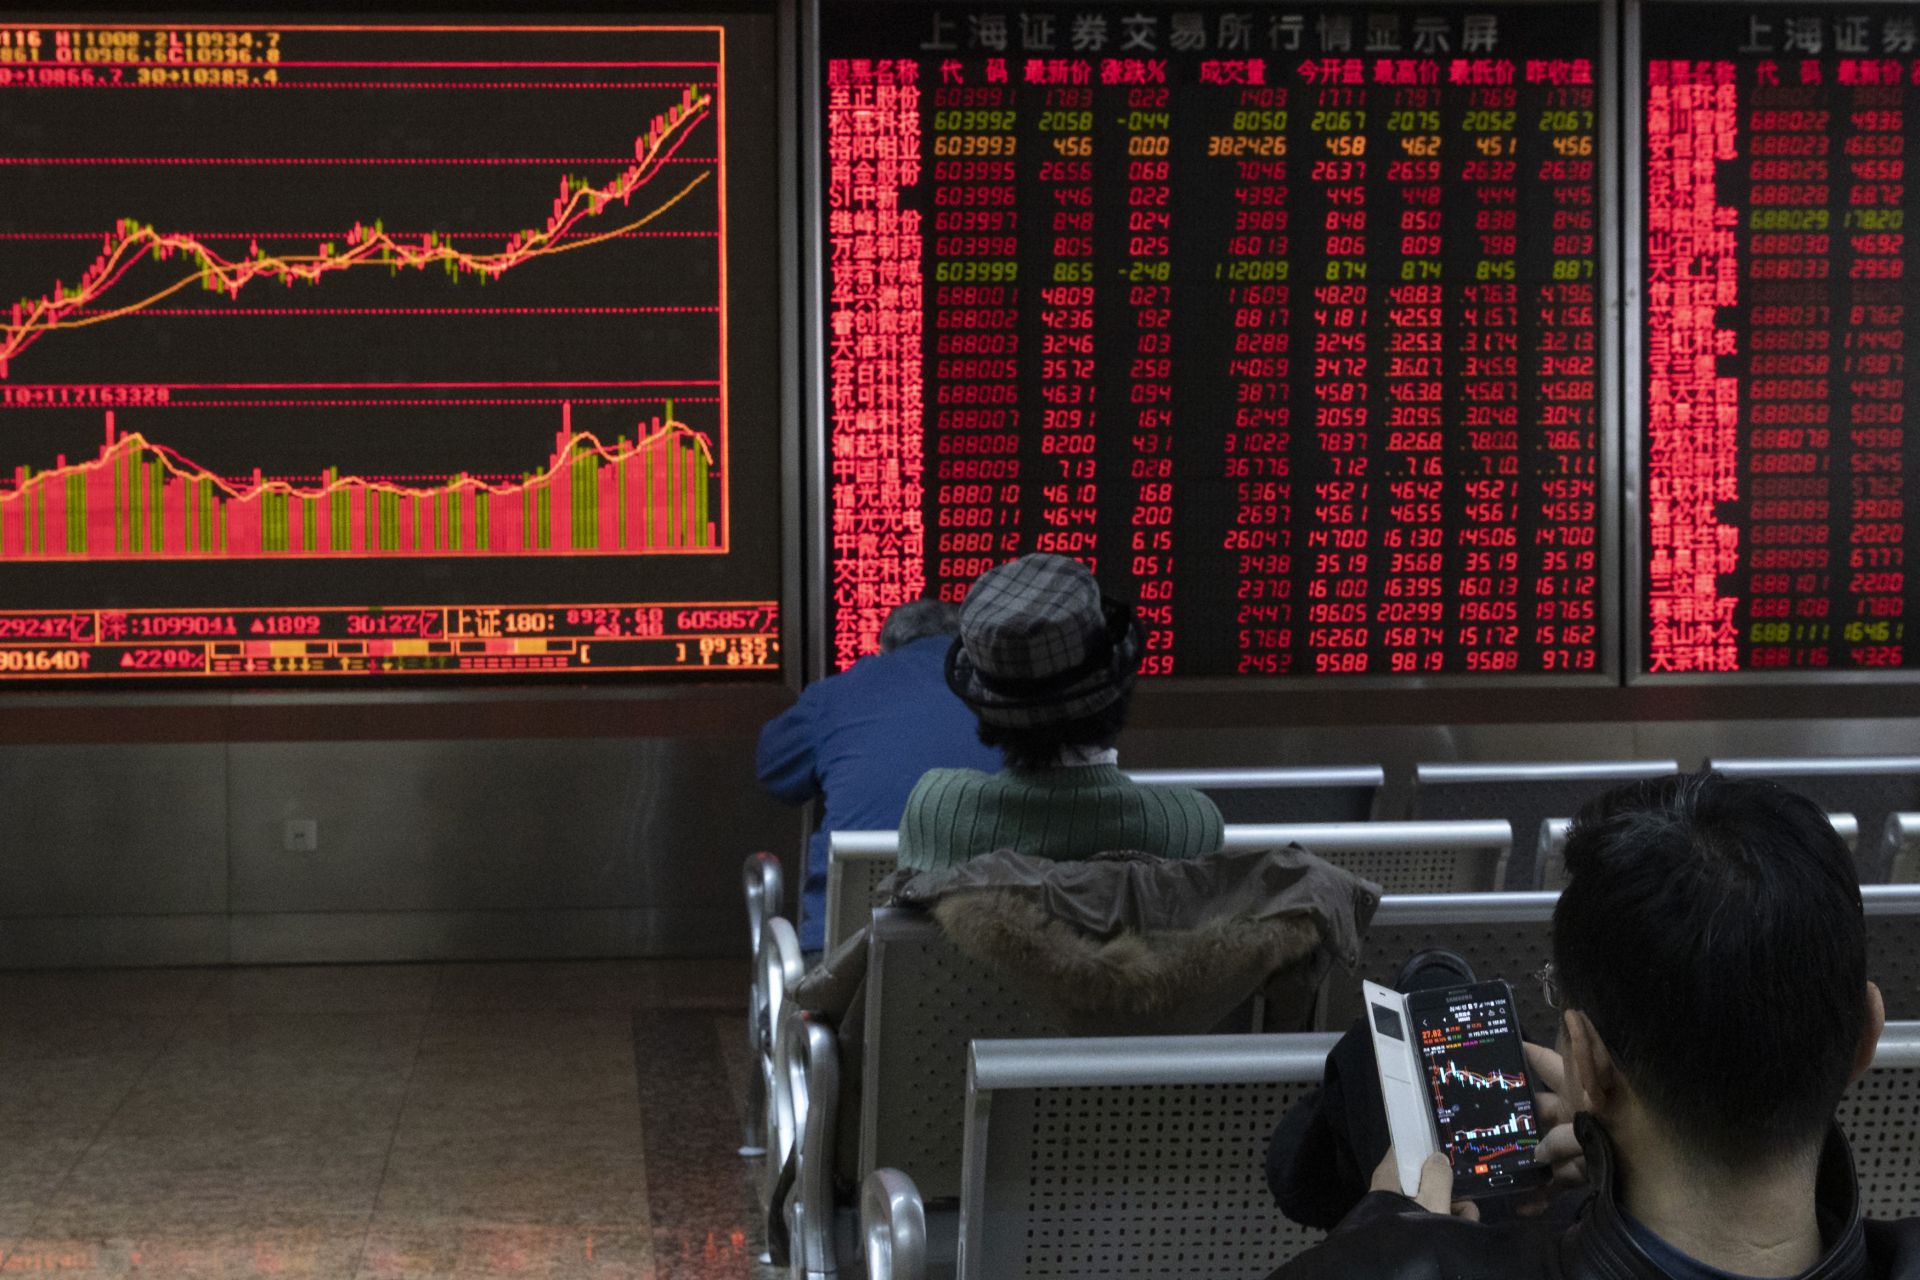 Пазарните фондови индекси на борсите в Шанхай, Токио, Хонконг и Сидни отбелязаха резки понижения след съобщението за нов починал от болестта